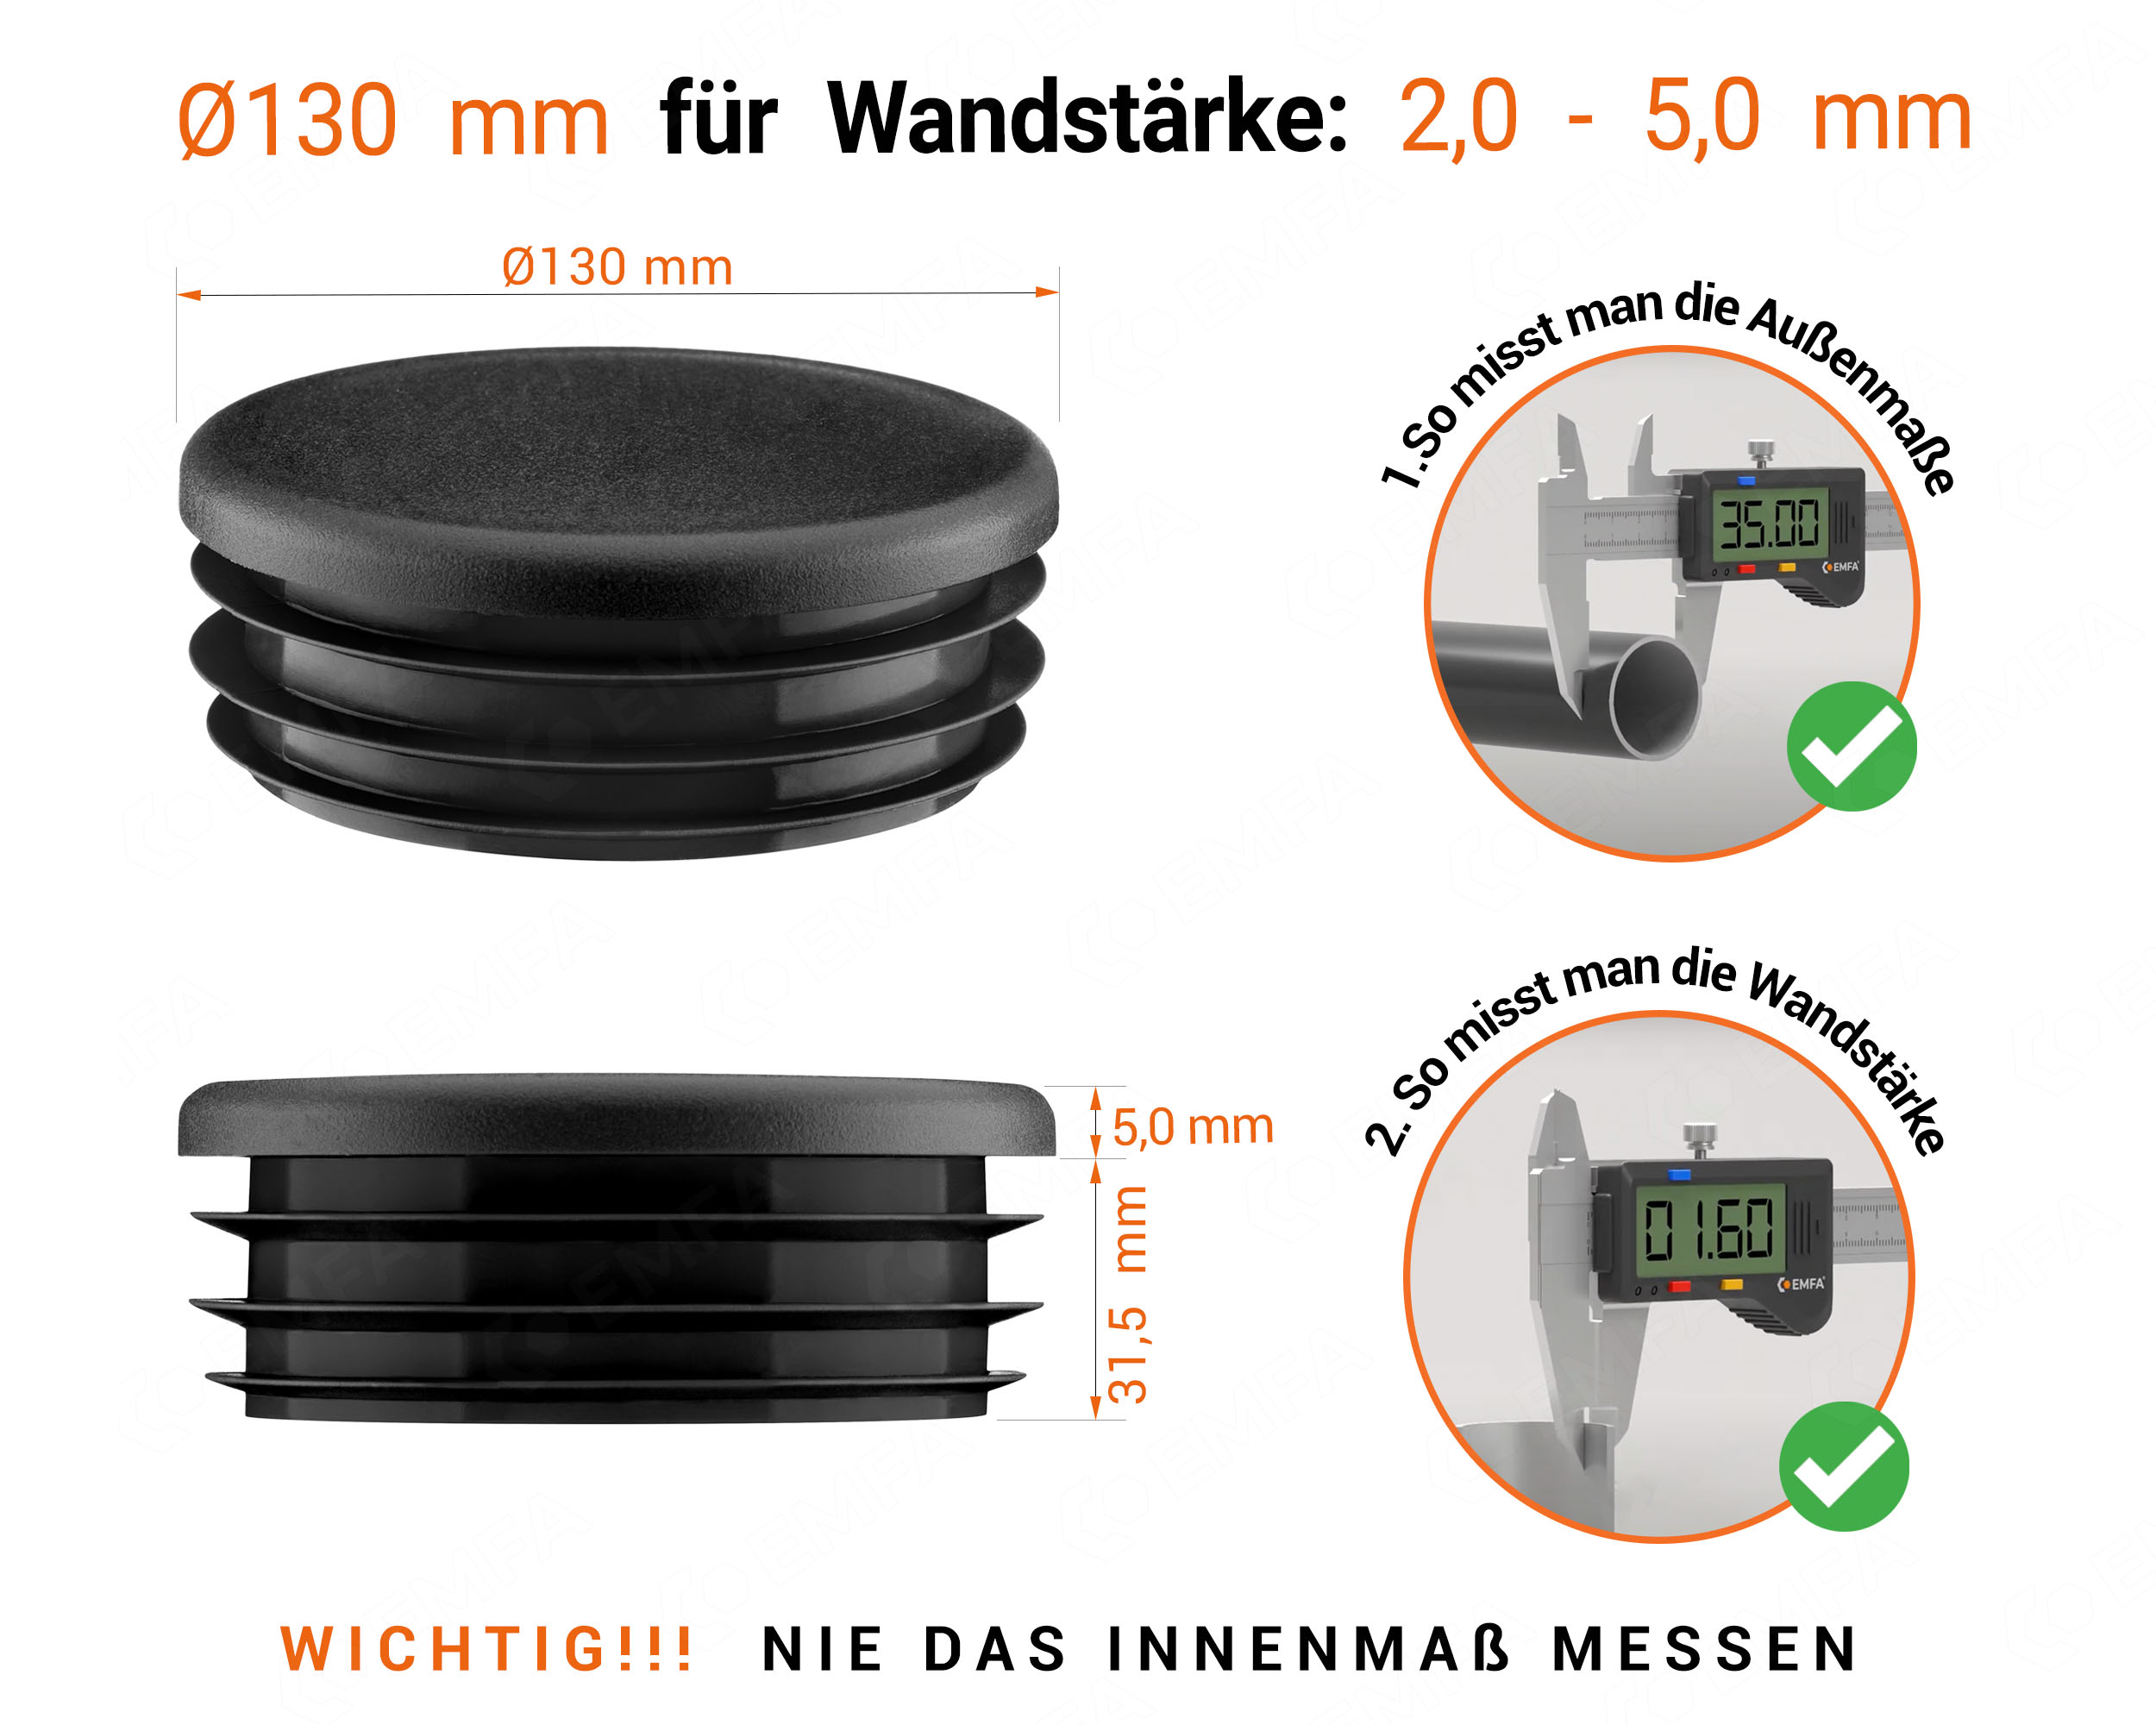 Schwarze Endkappe für Rundrohre in der Größe 130 mm mit technischen Abmessungen und Anleitung für korrekte Messung